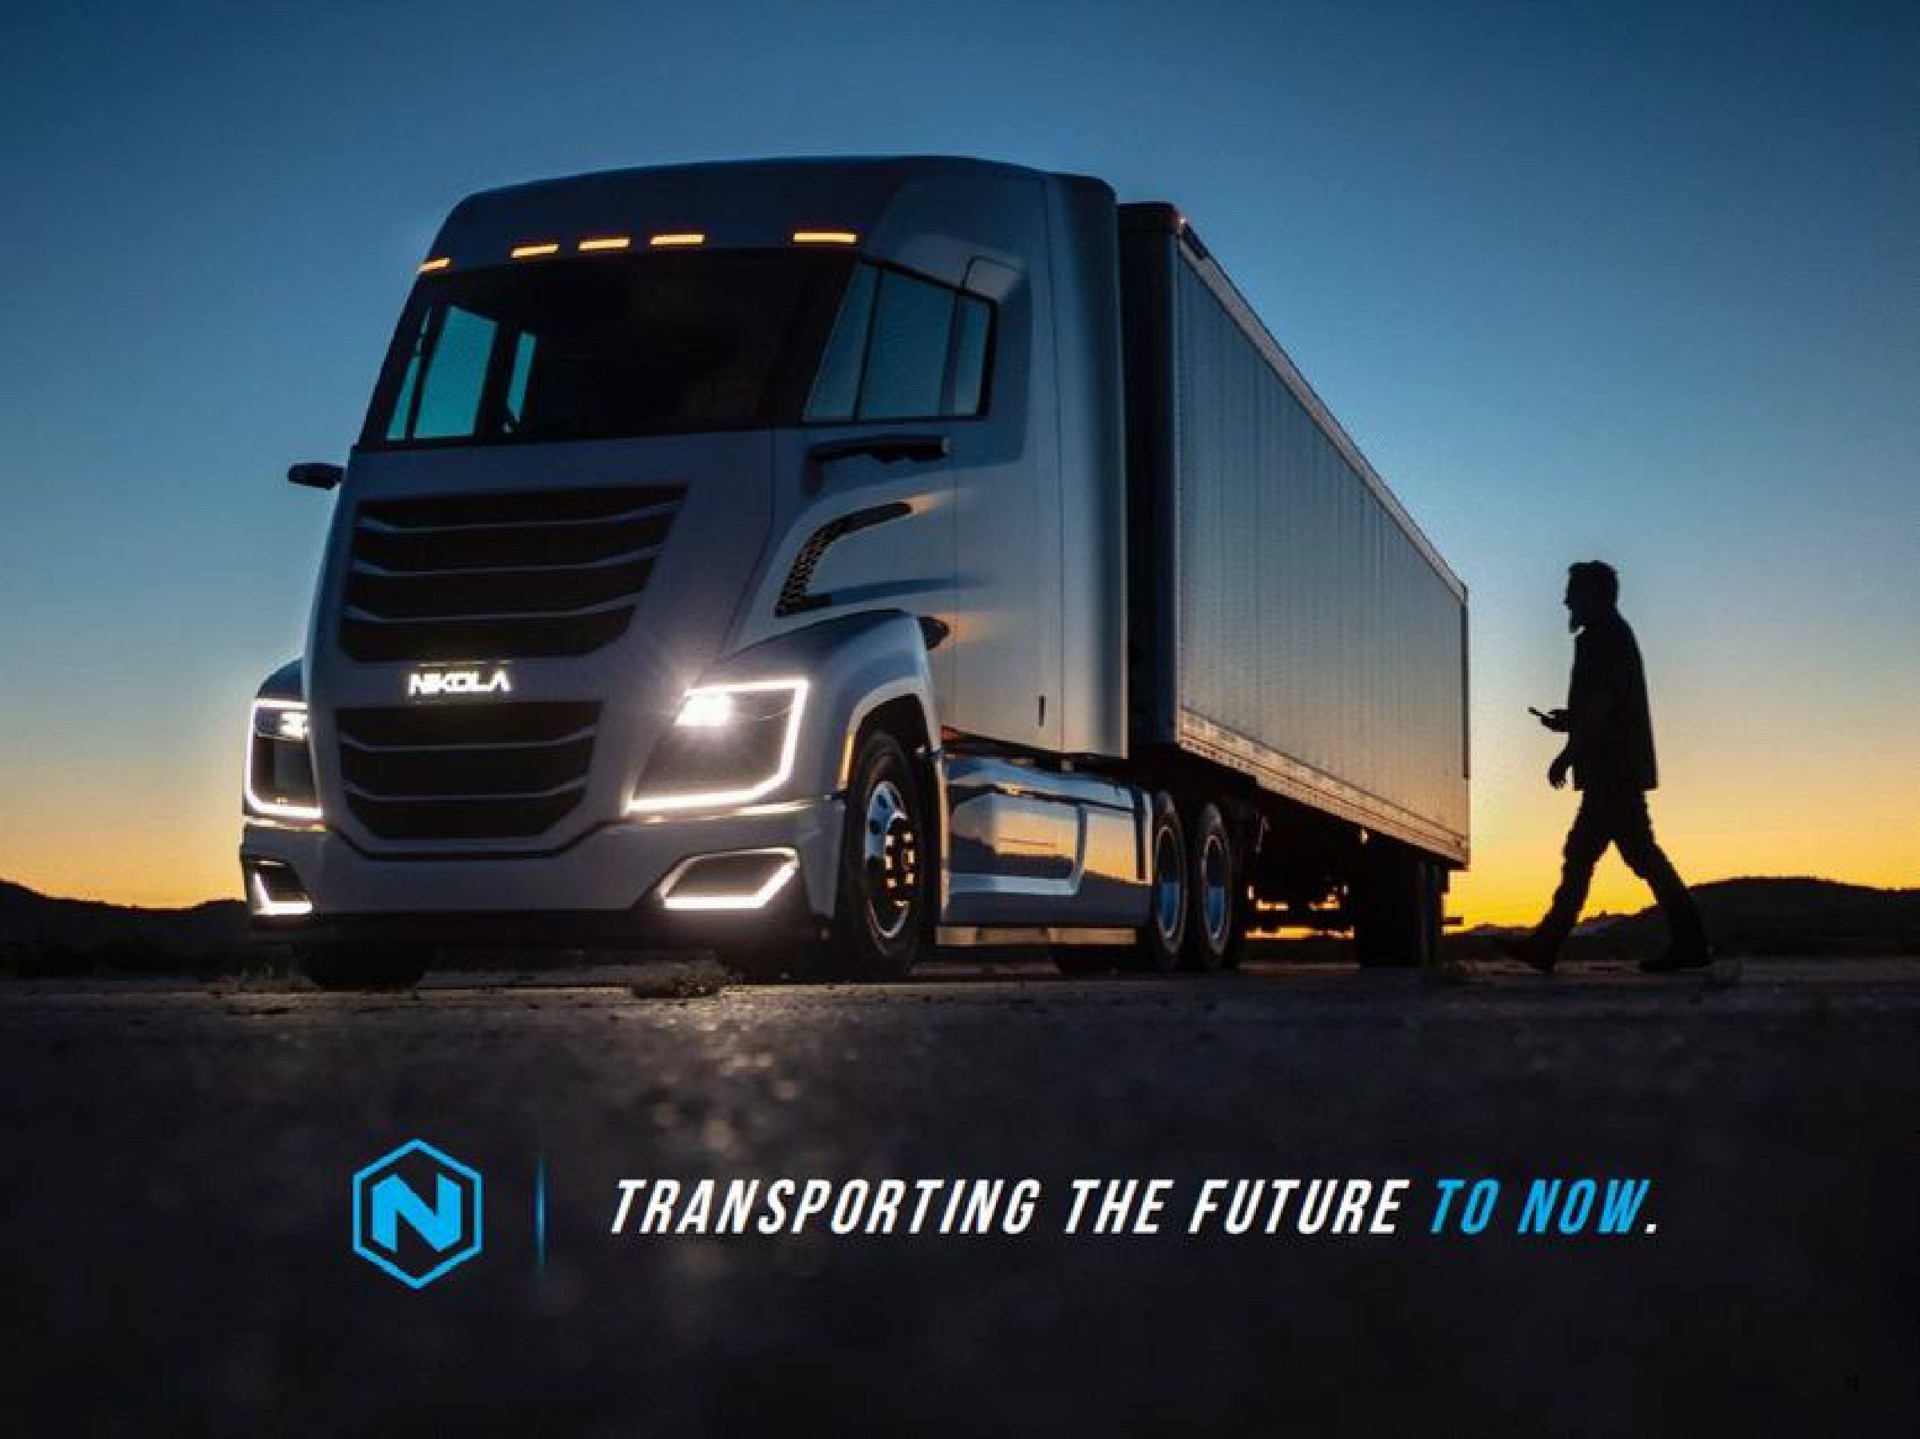 transporting the future now | Nikola